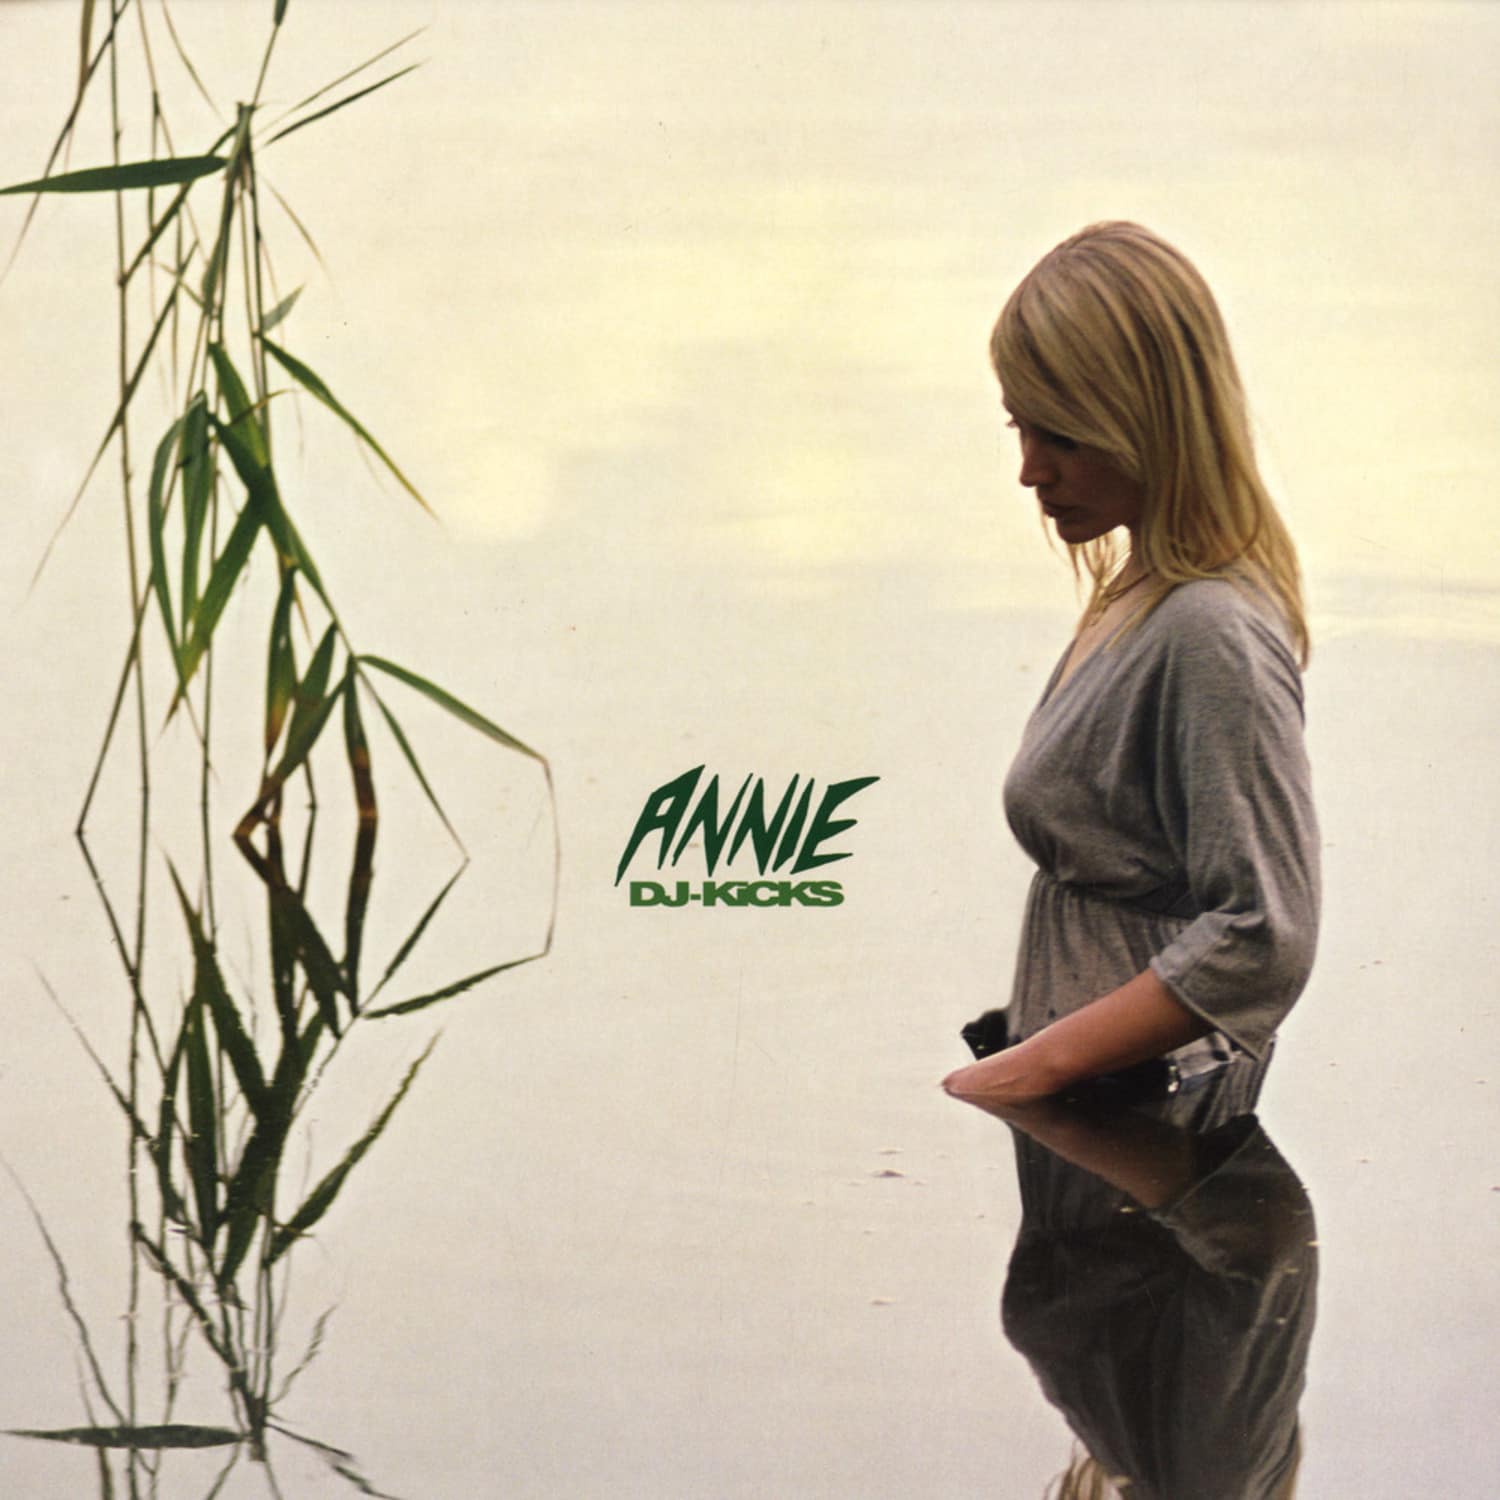 Annie - DJ KICKS 